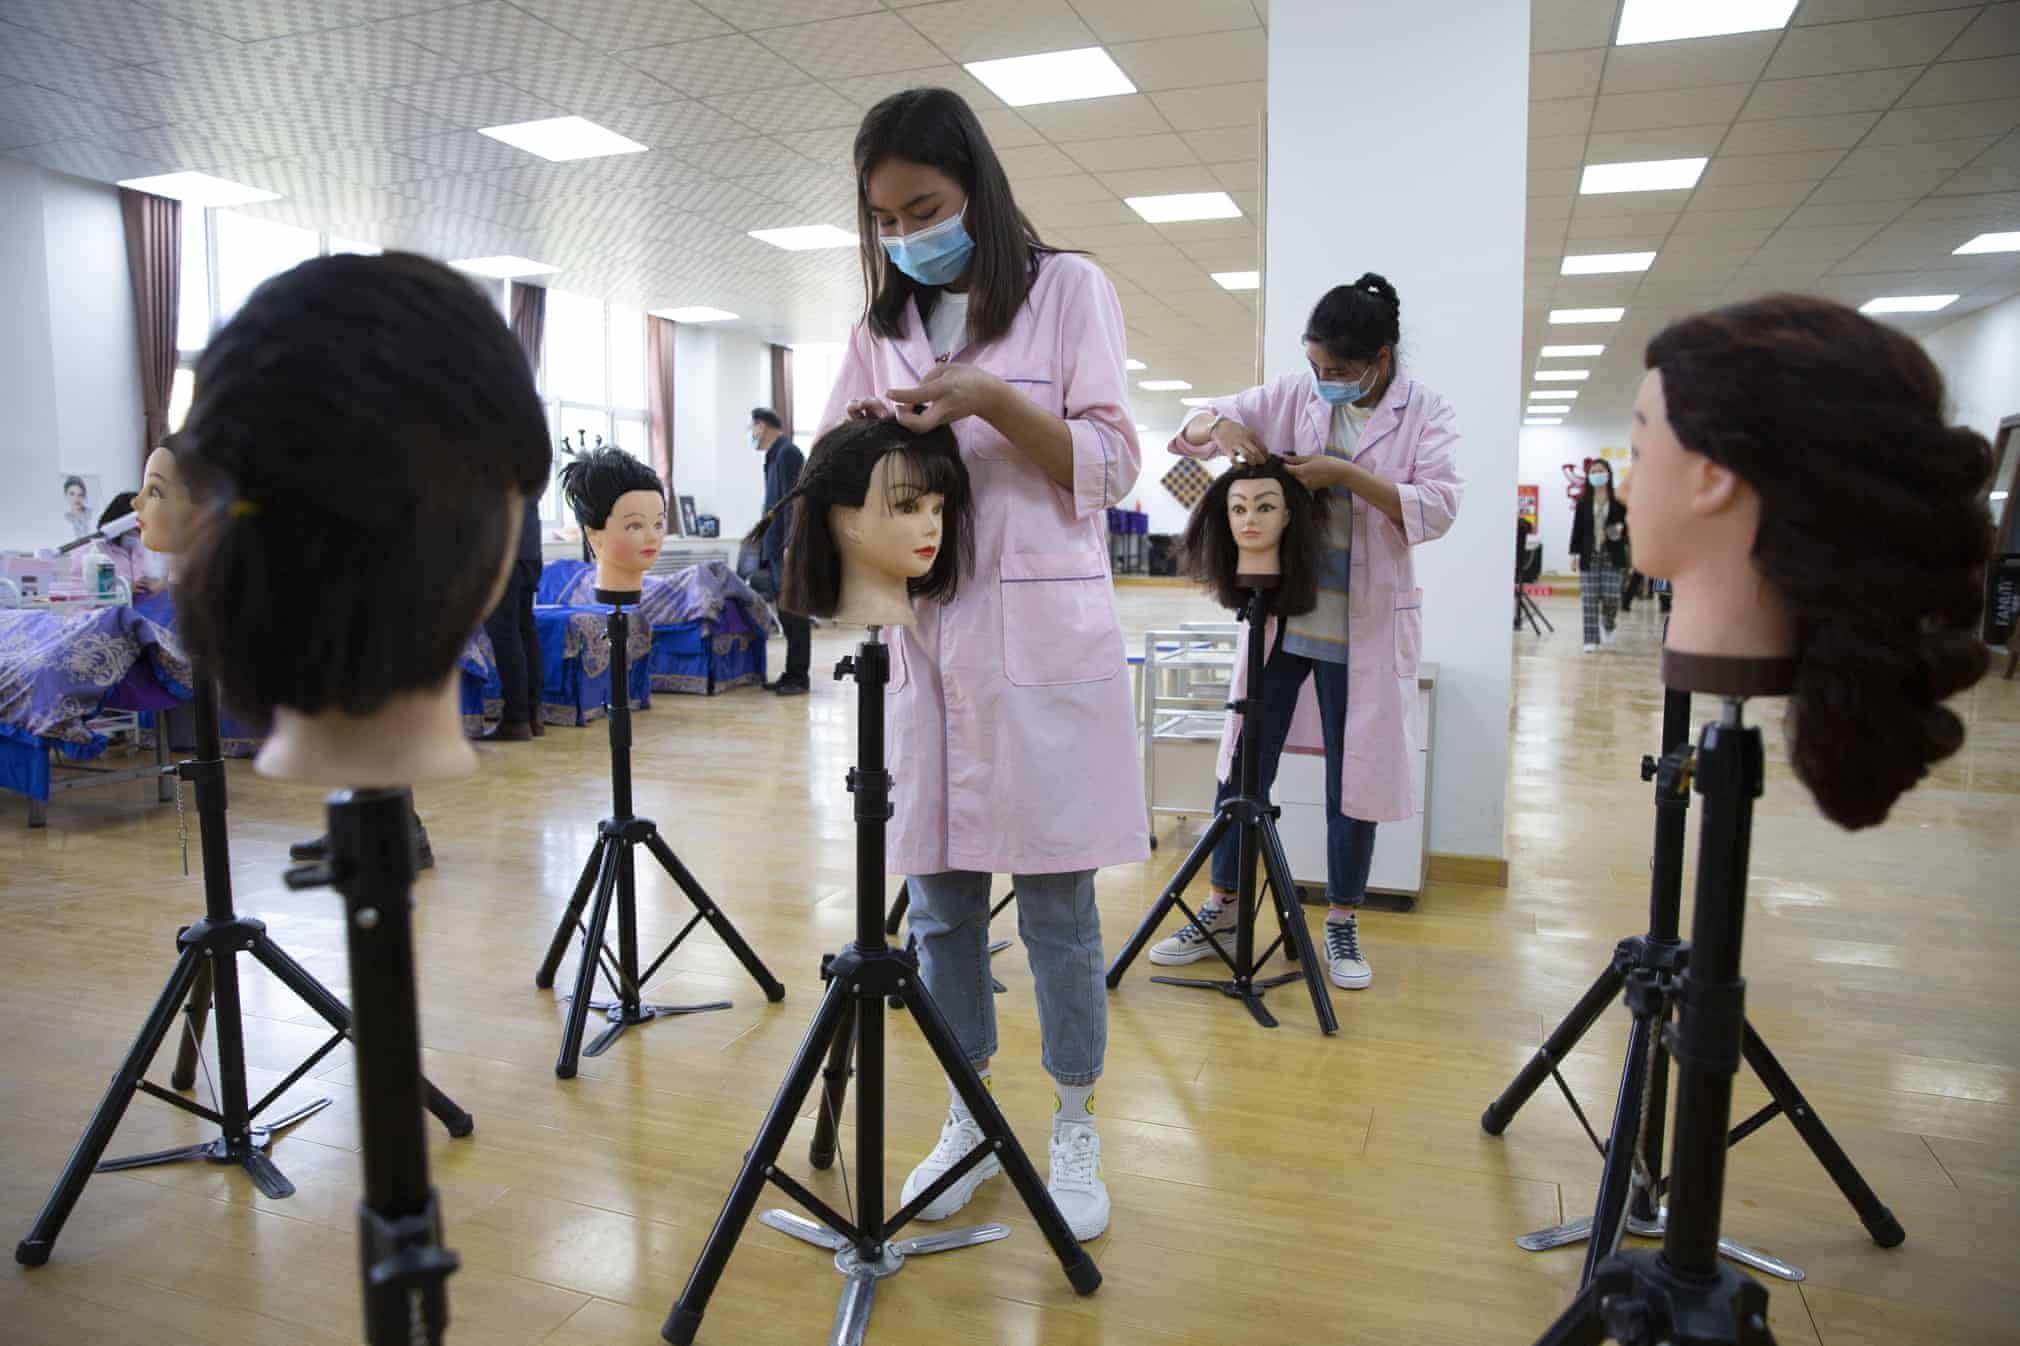 کار کردن دانش آموزان چینی در مدرسه روی گلاه کیس مانکن ها